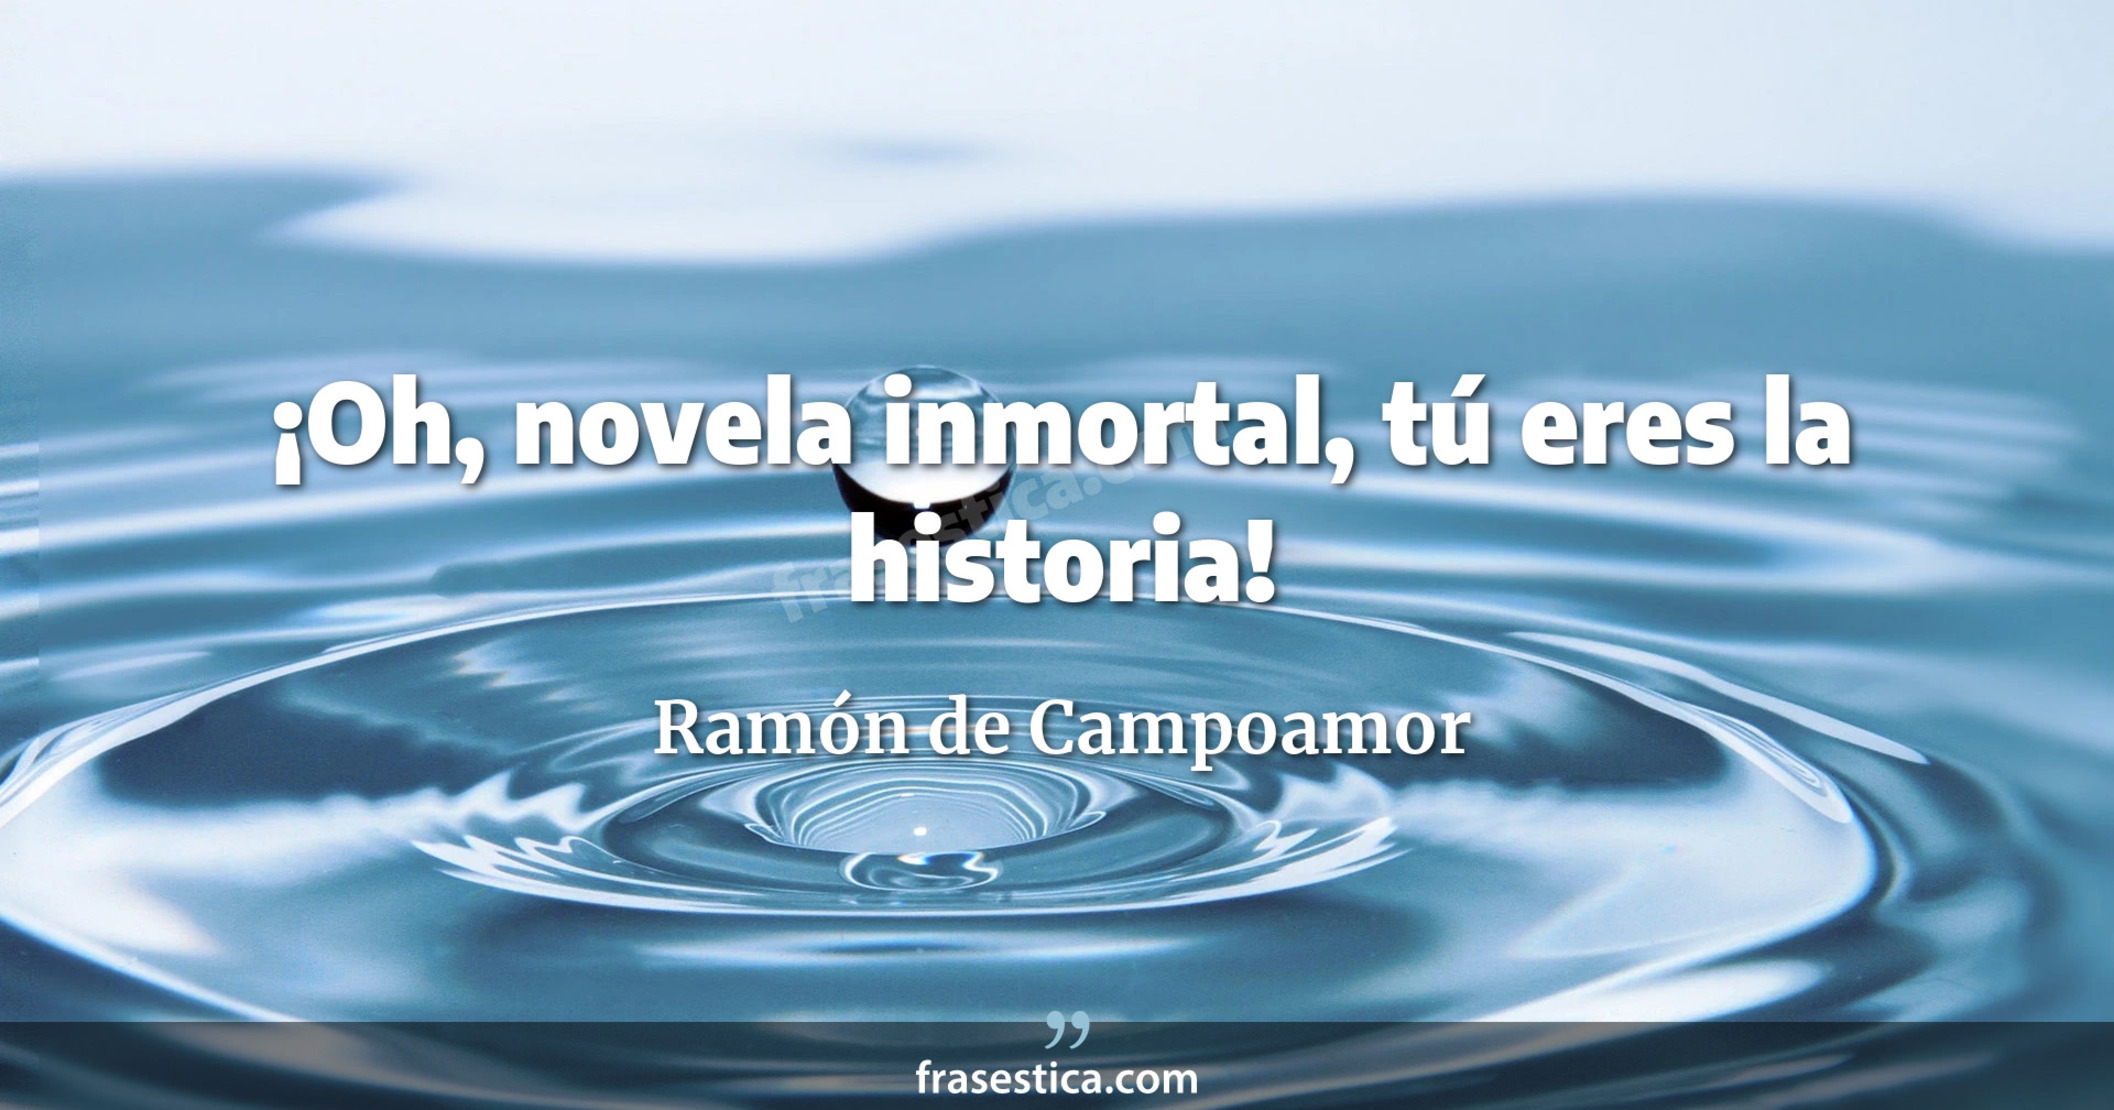 ¡Oh, novela inmortal, tú eres la historia! - Ramón de Campoamor